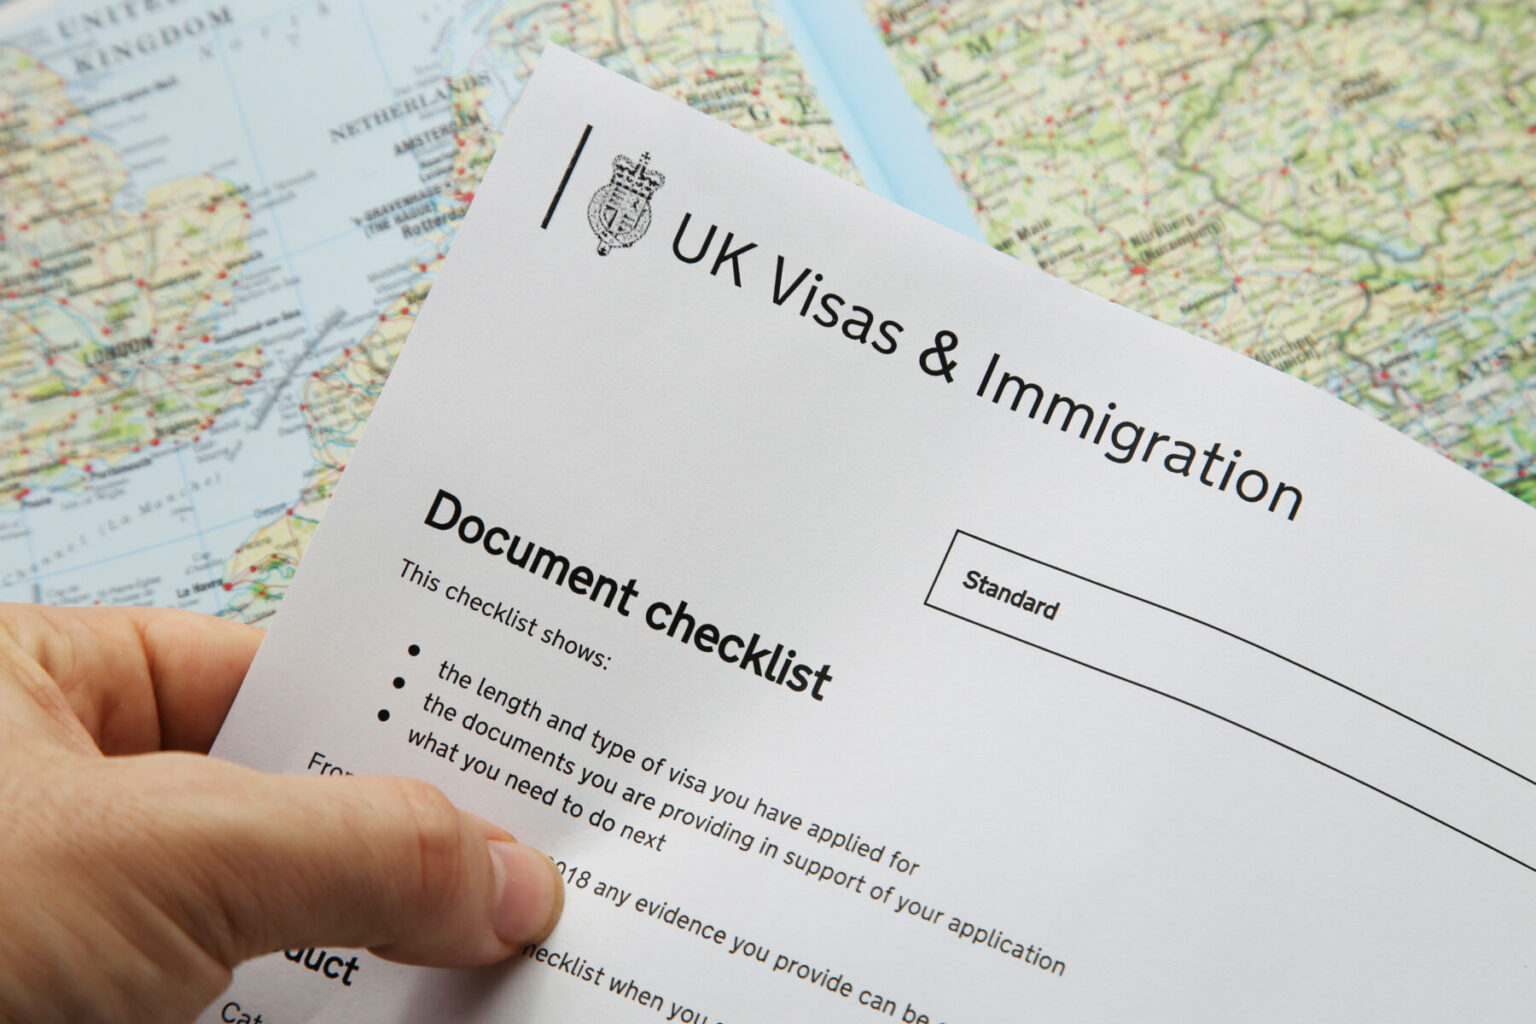 Uk visas immigration анкета. Виза uk. Виза в Британию. Визы иммиграция.